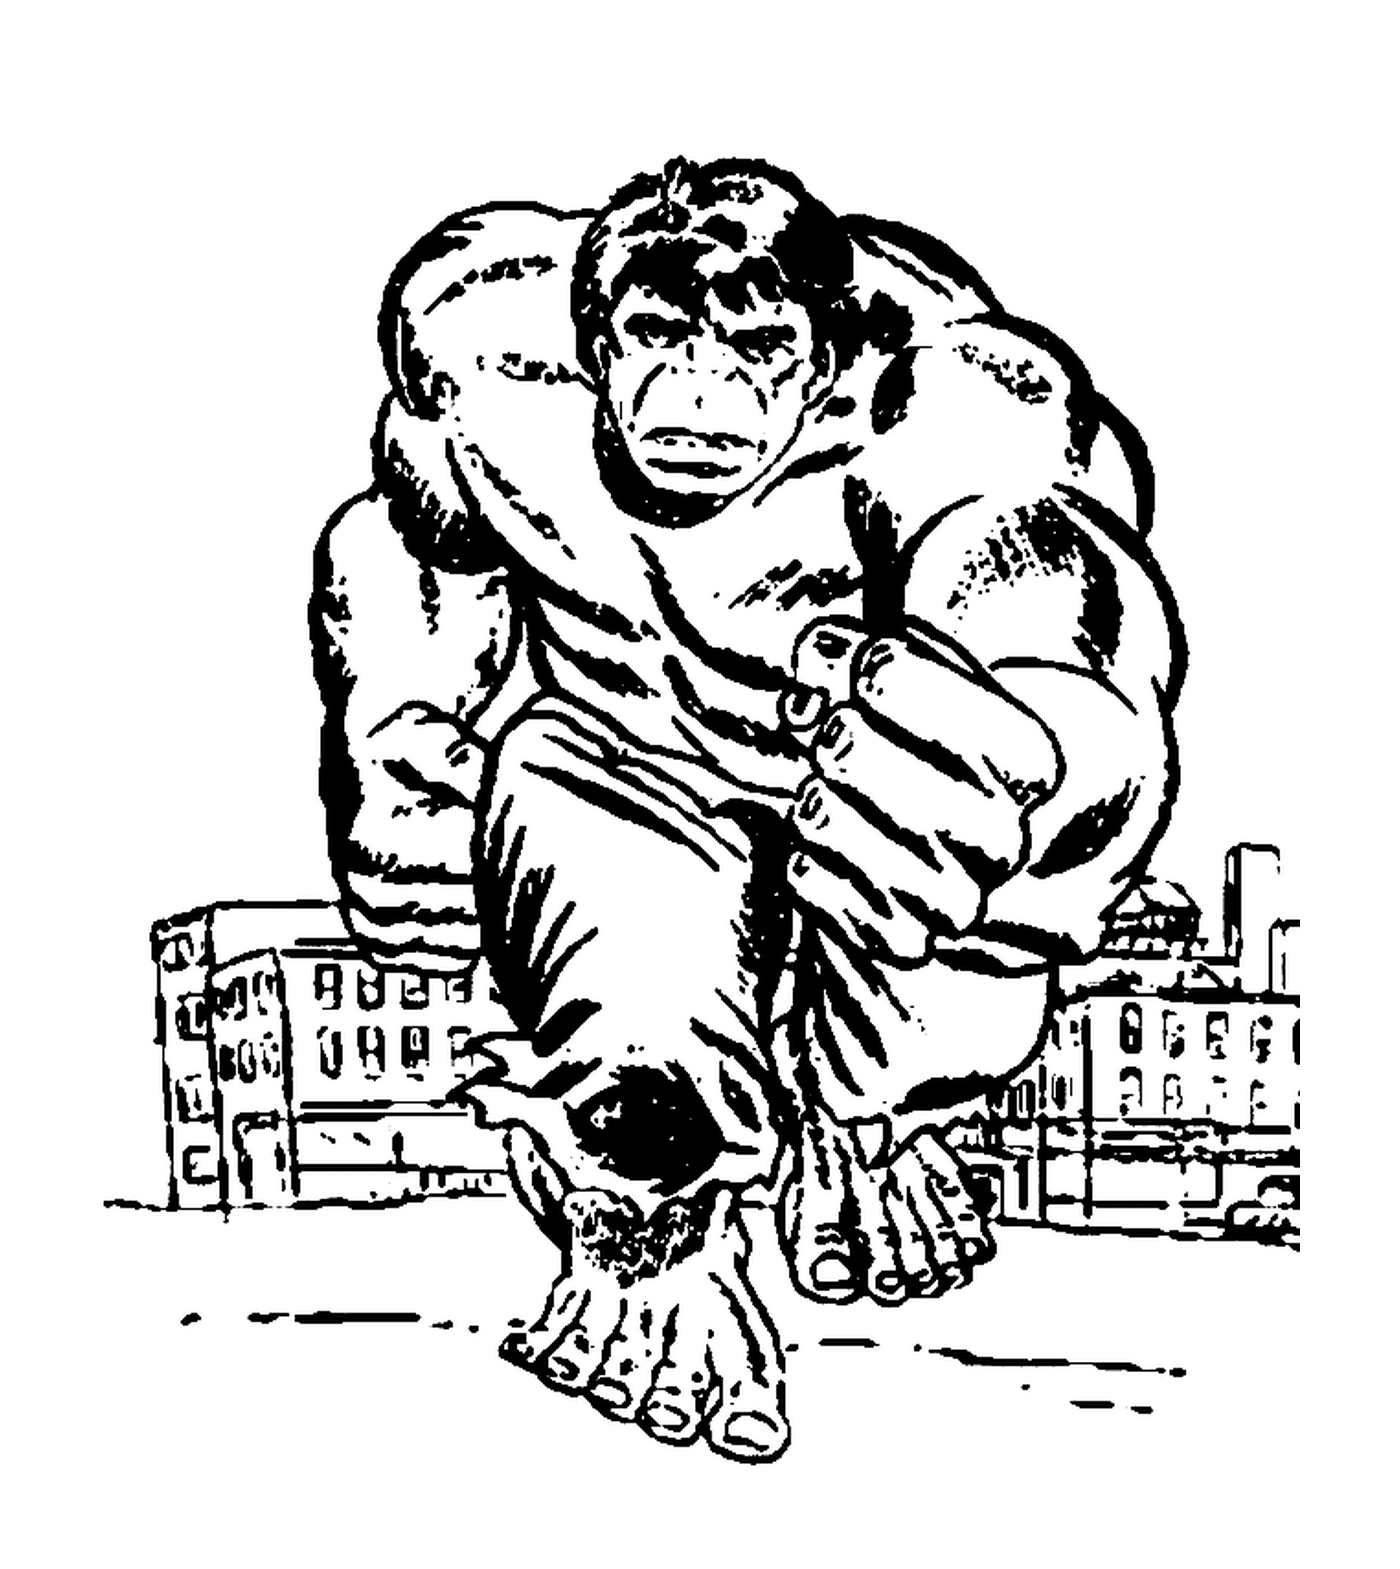  Hulk verlässt die Stadt 